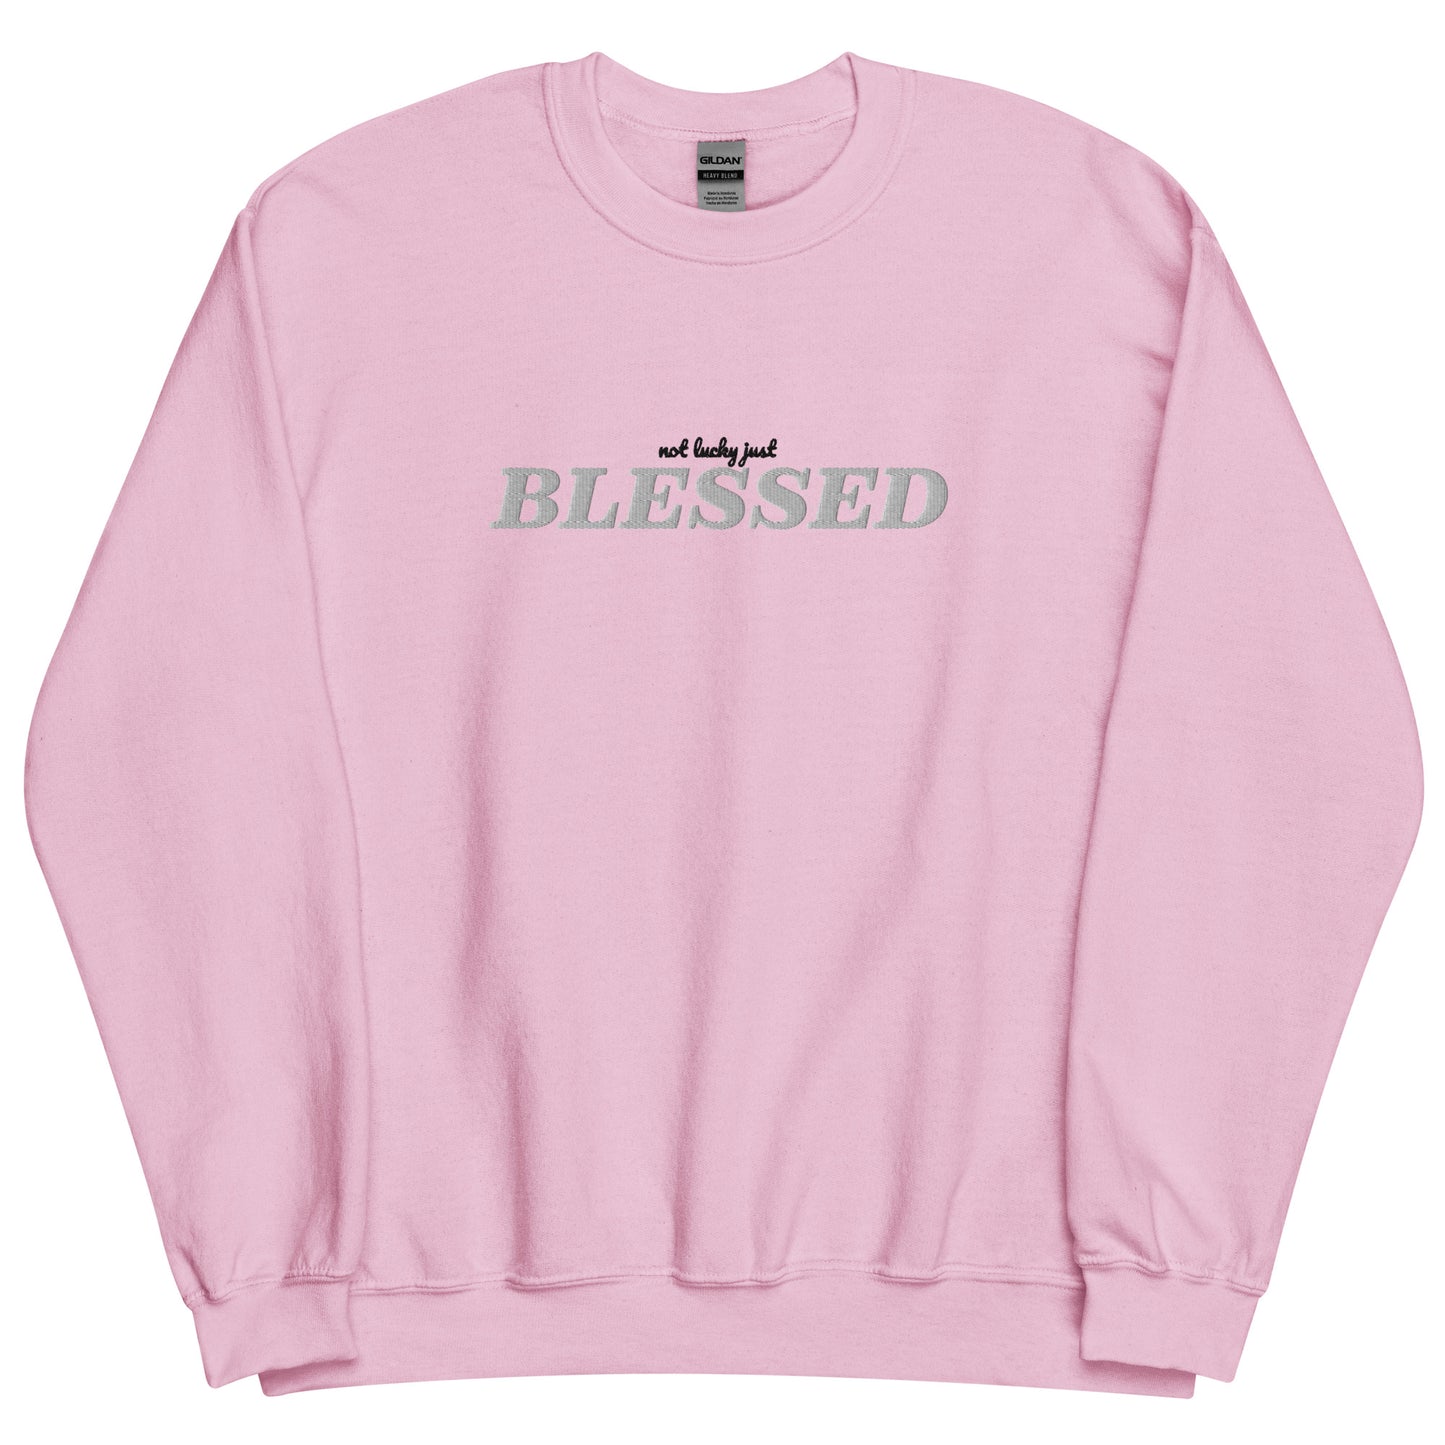 Licht roze sweater met geborduurde letters op de borst.